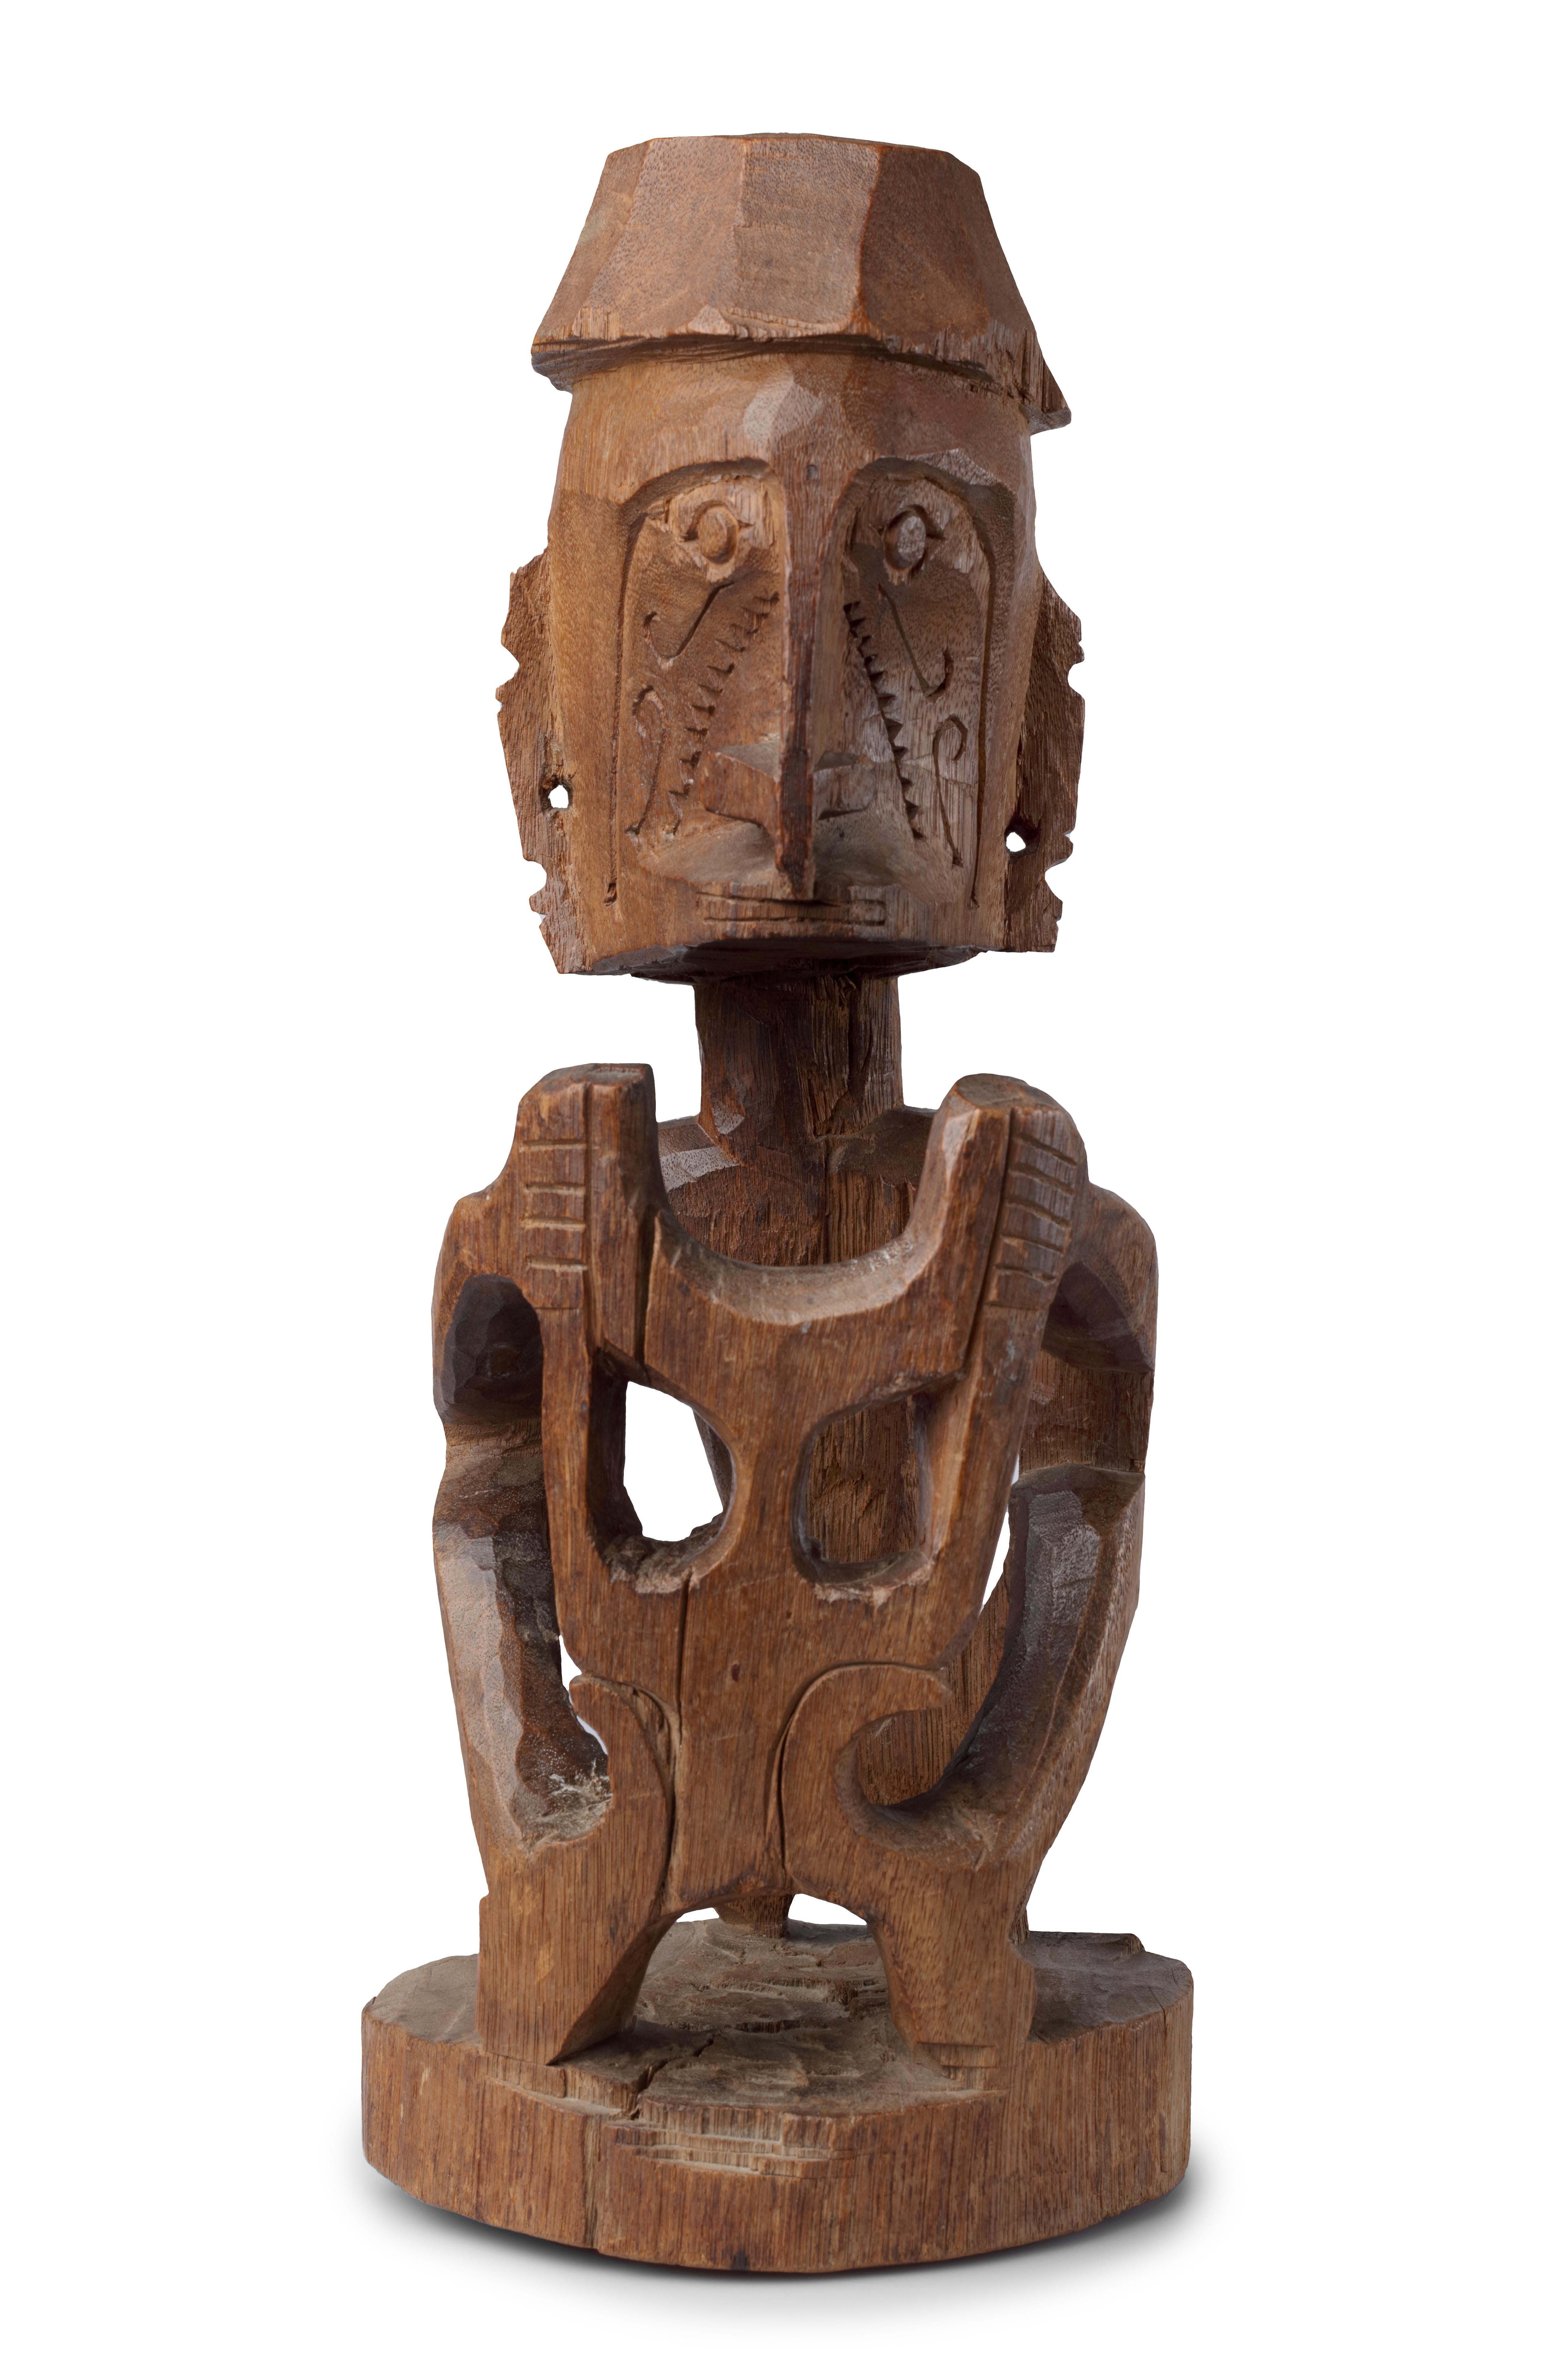 Tribal Statue de la première guerre mondiale en Papouasie-Guinée, collection de Missionary Starrenburg, collectionnée en 1909 en vente